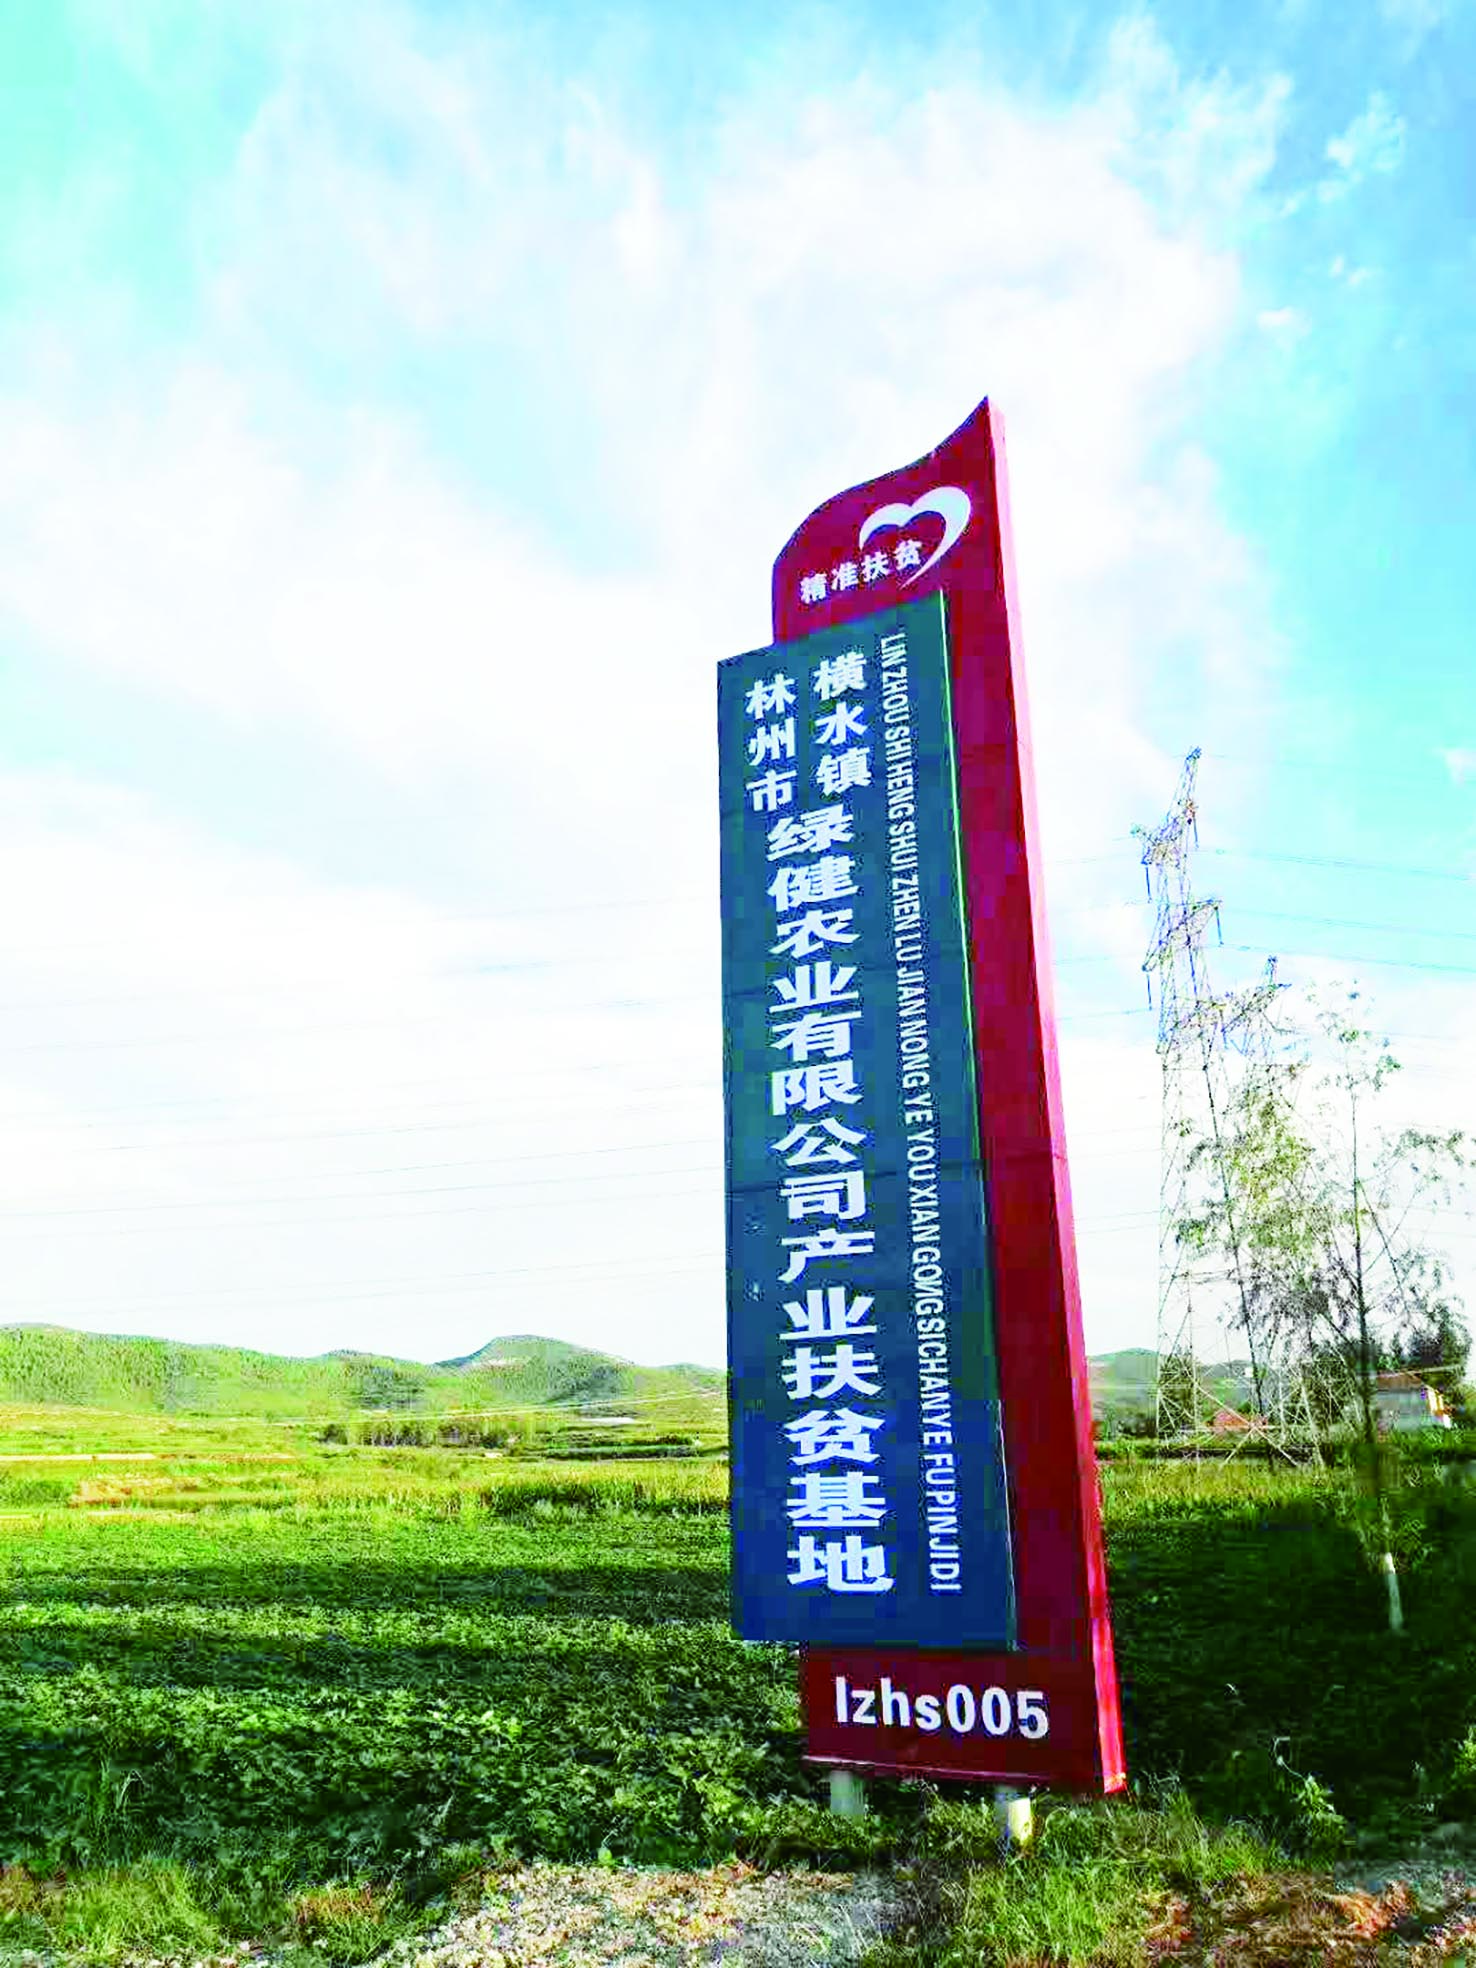 林州市建筑业企业家刘志军创立的绿健农业有限公司产业扶贫基地.jpg